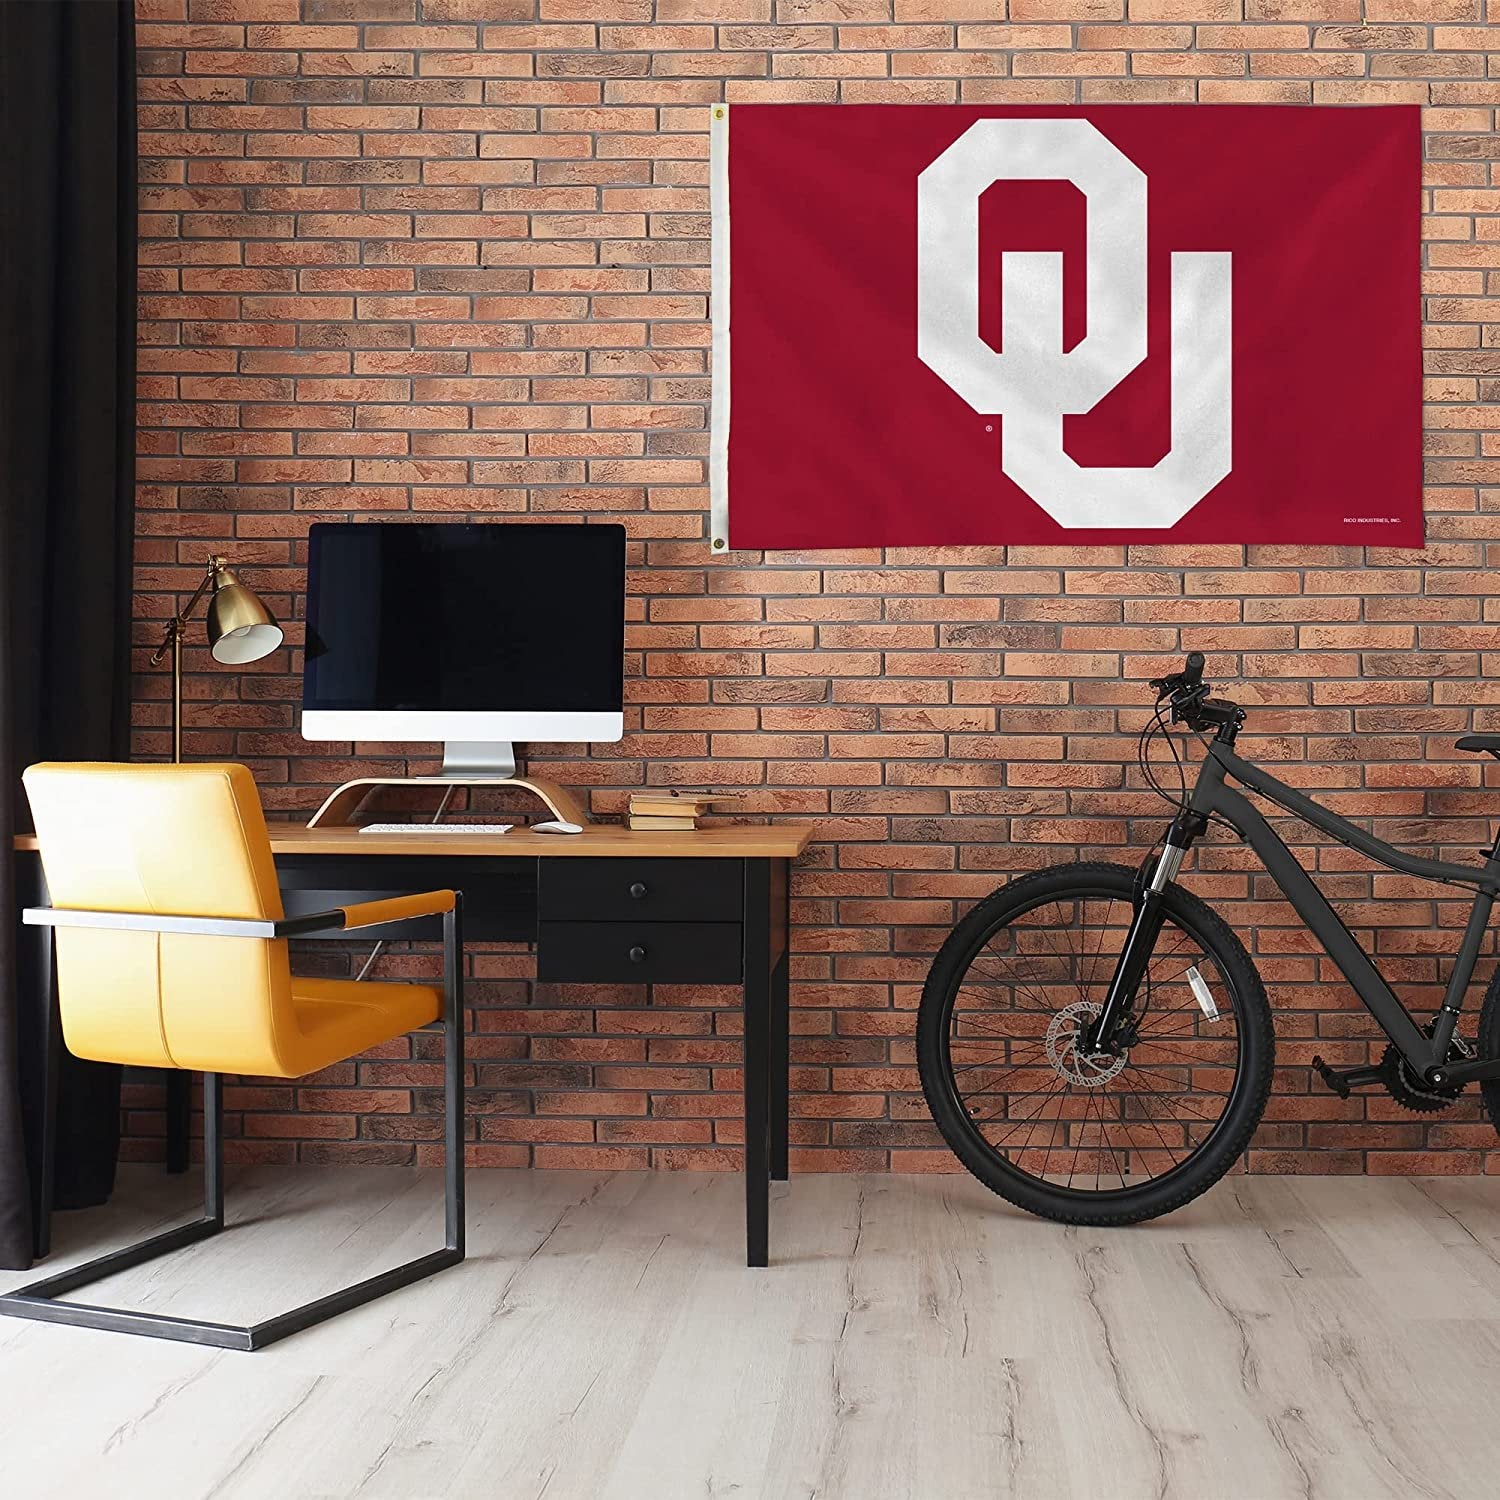 University of Oklahoma Sooners 3x5 Foot Flag Banner Metal Grommets Indoor Outdoor